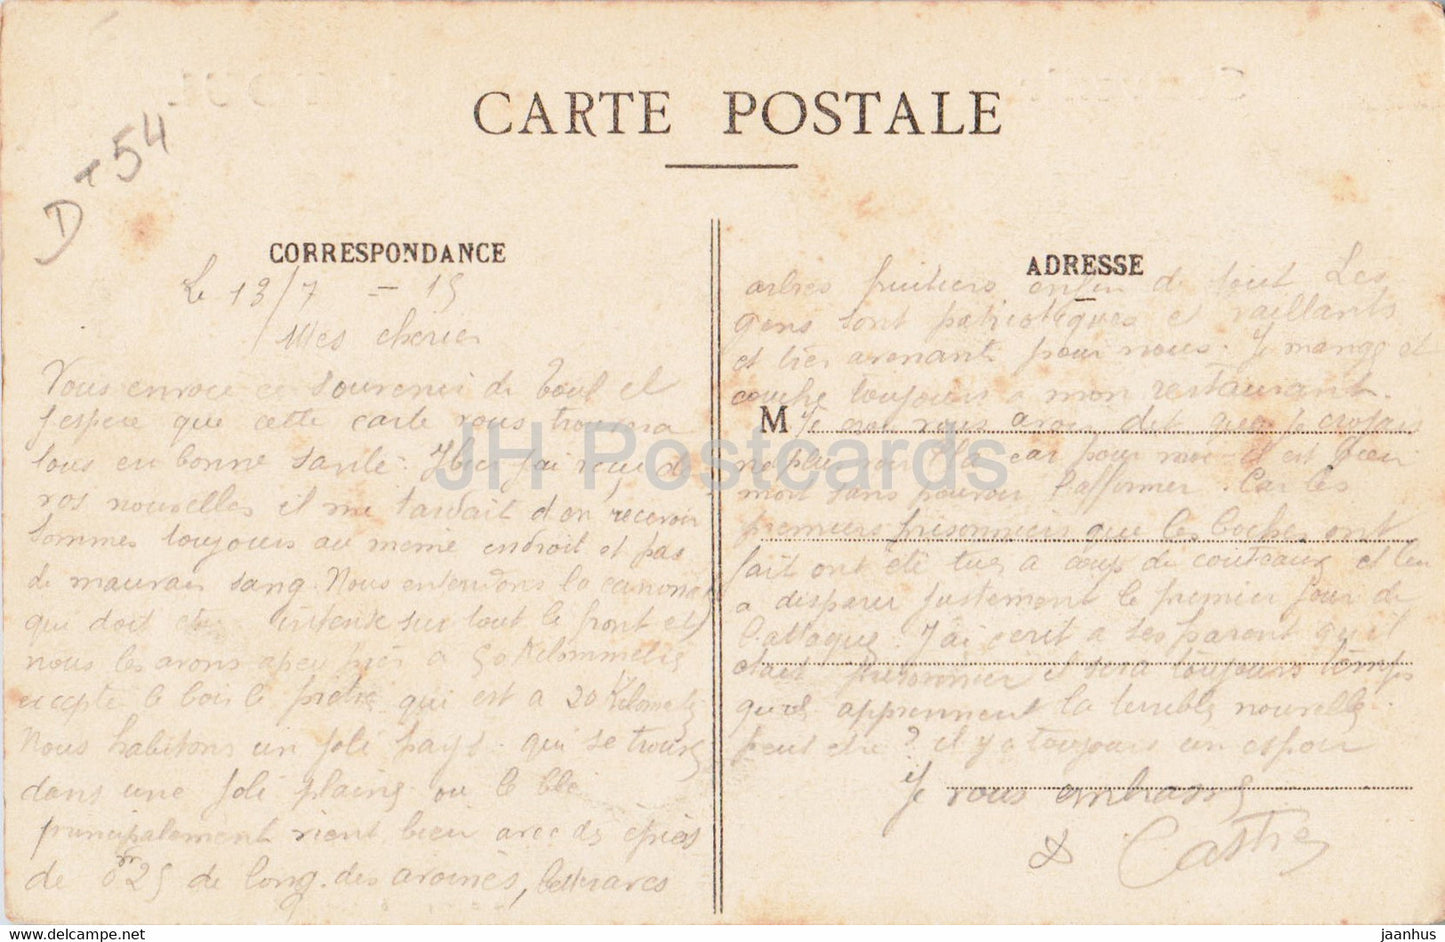 Souvenir de Toul - old postcard - France - used